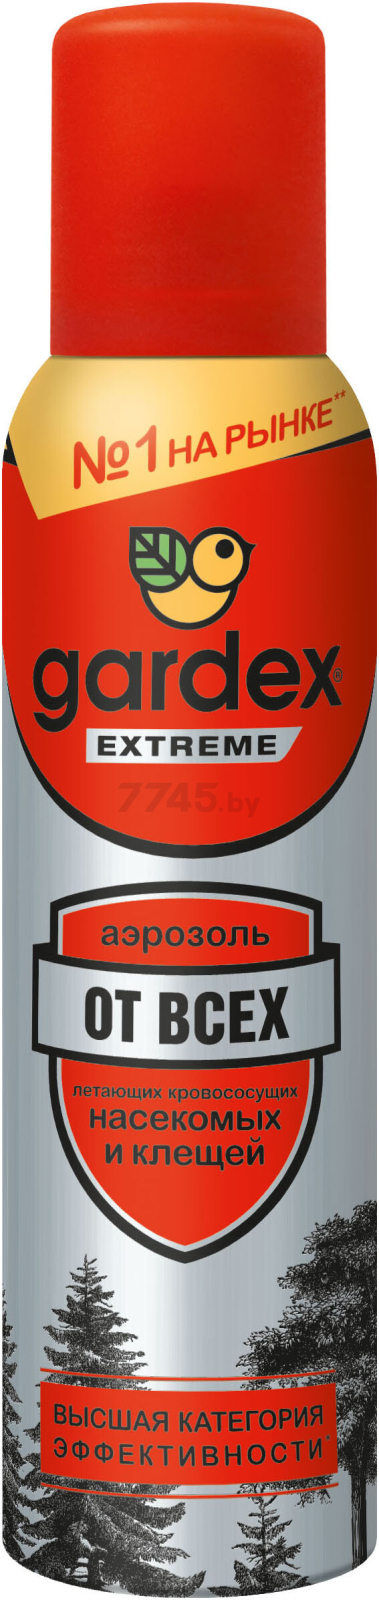 Средство репеллентное от насекомых GARDEX Extreme 150 мл (24021)